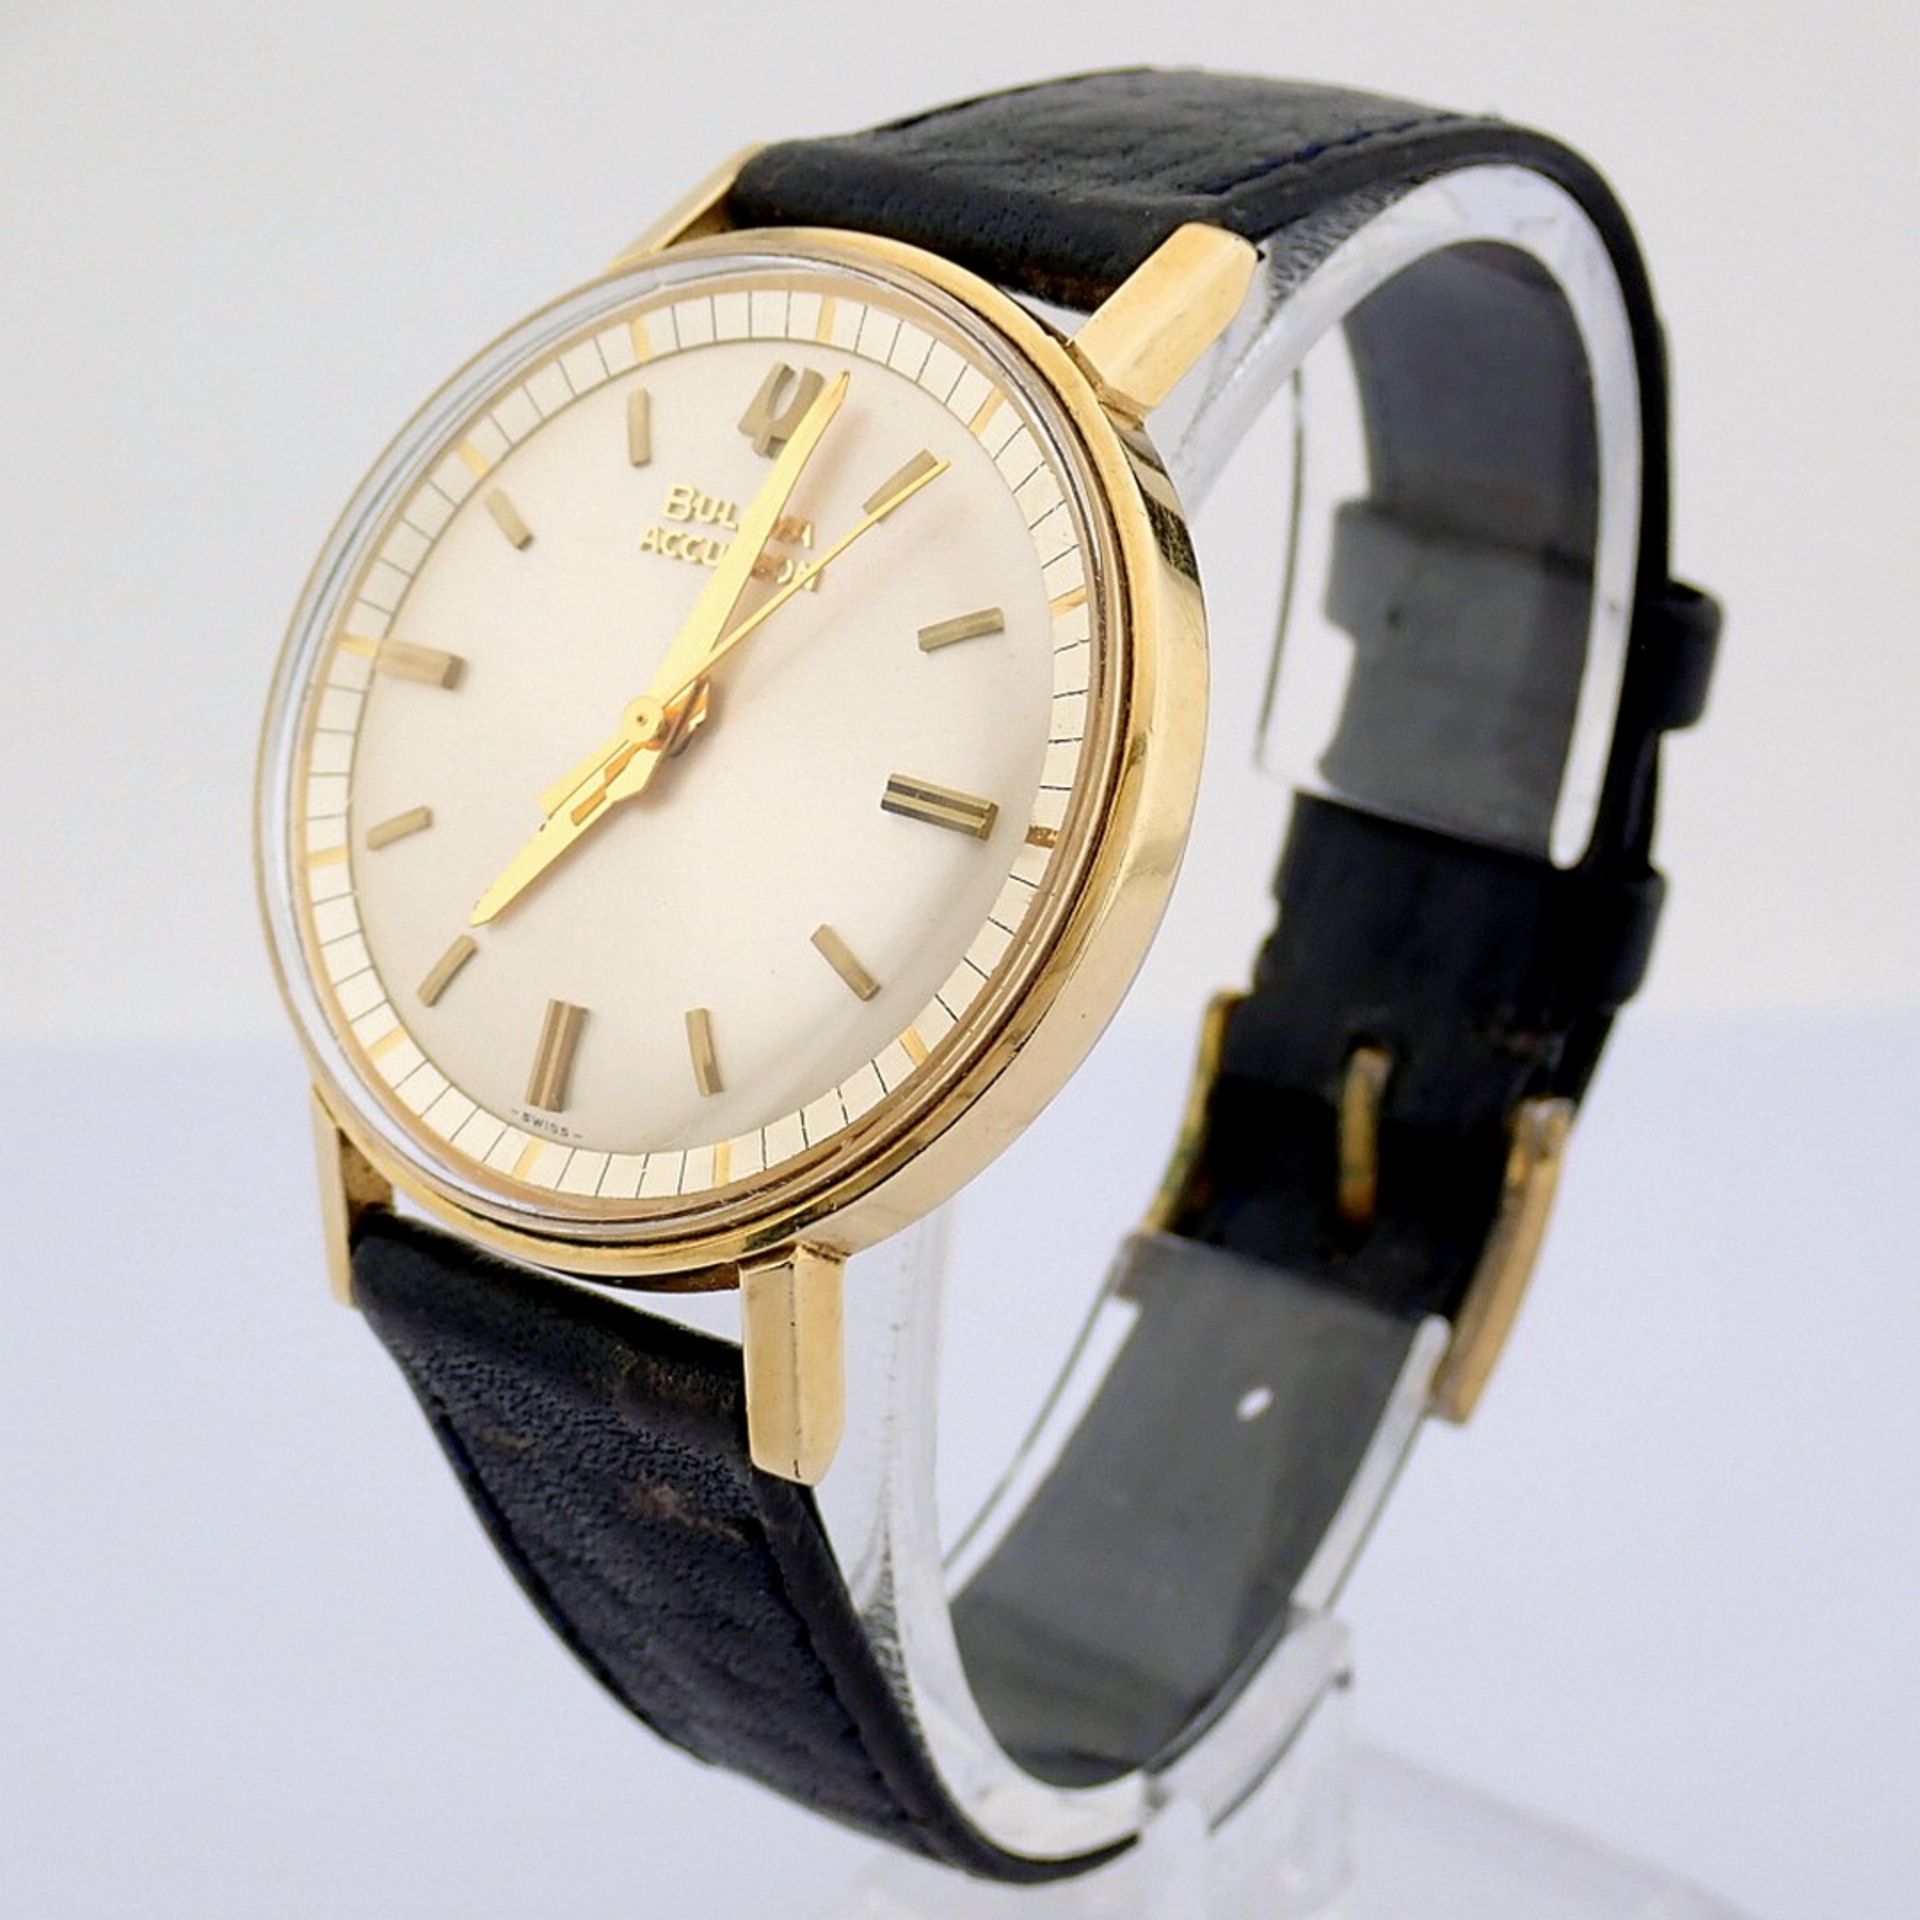 Bulova / Accutron - Vintage - Gentlemen's Steel Wrist Watch - Image 5 of 9